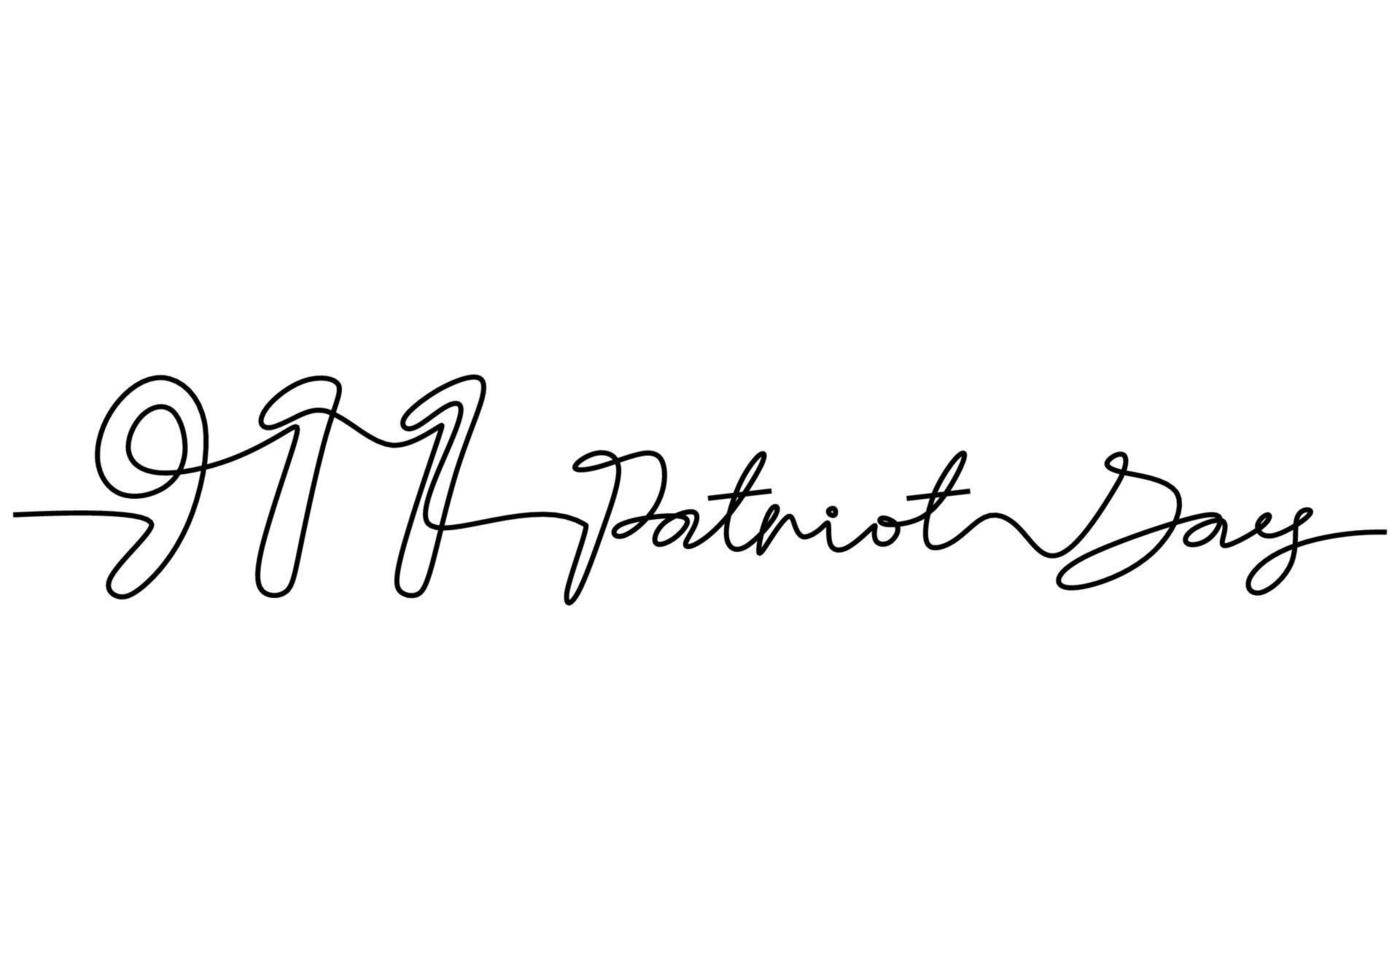 una línea continua de 911 patriot day carta palabra escrita a mano vector